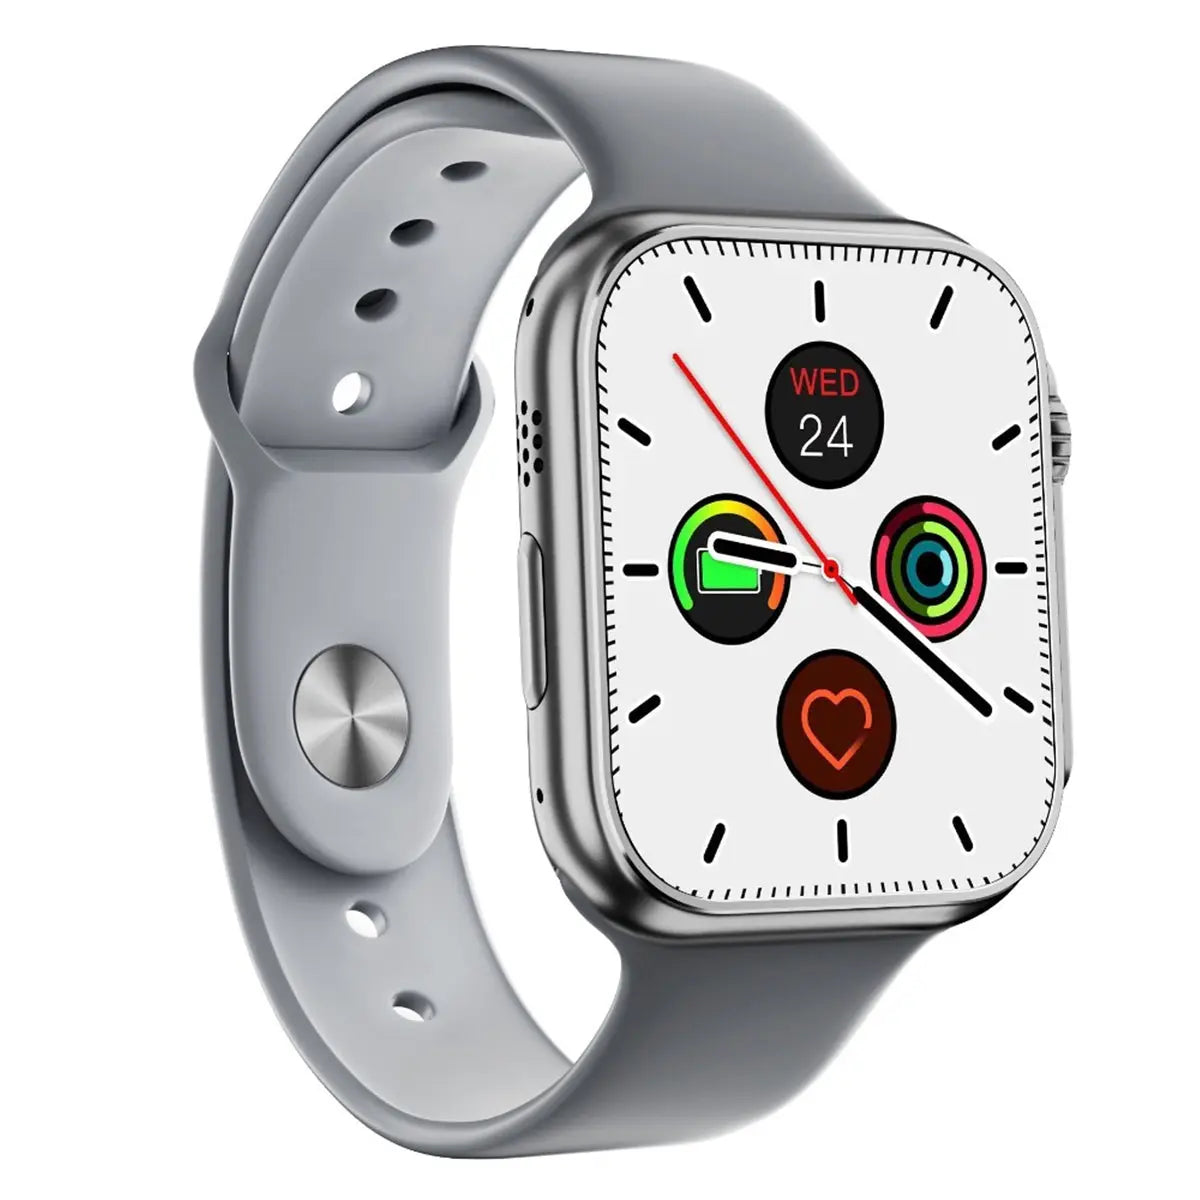 Reloj Inteligente Smart Watch Ws8 Ultra Fralugio Nfc Full Hd